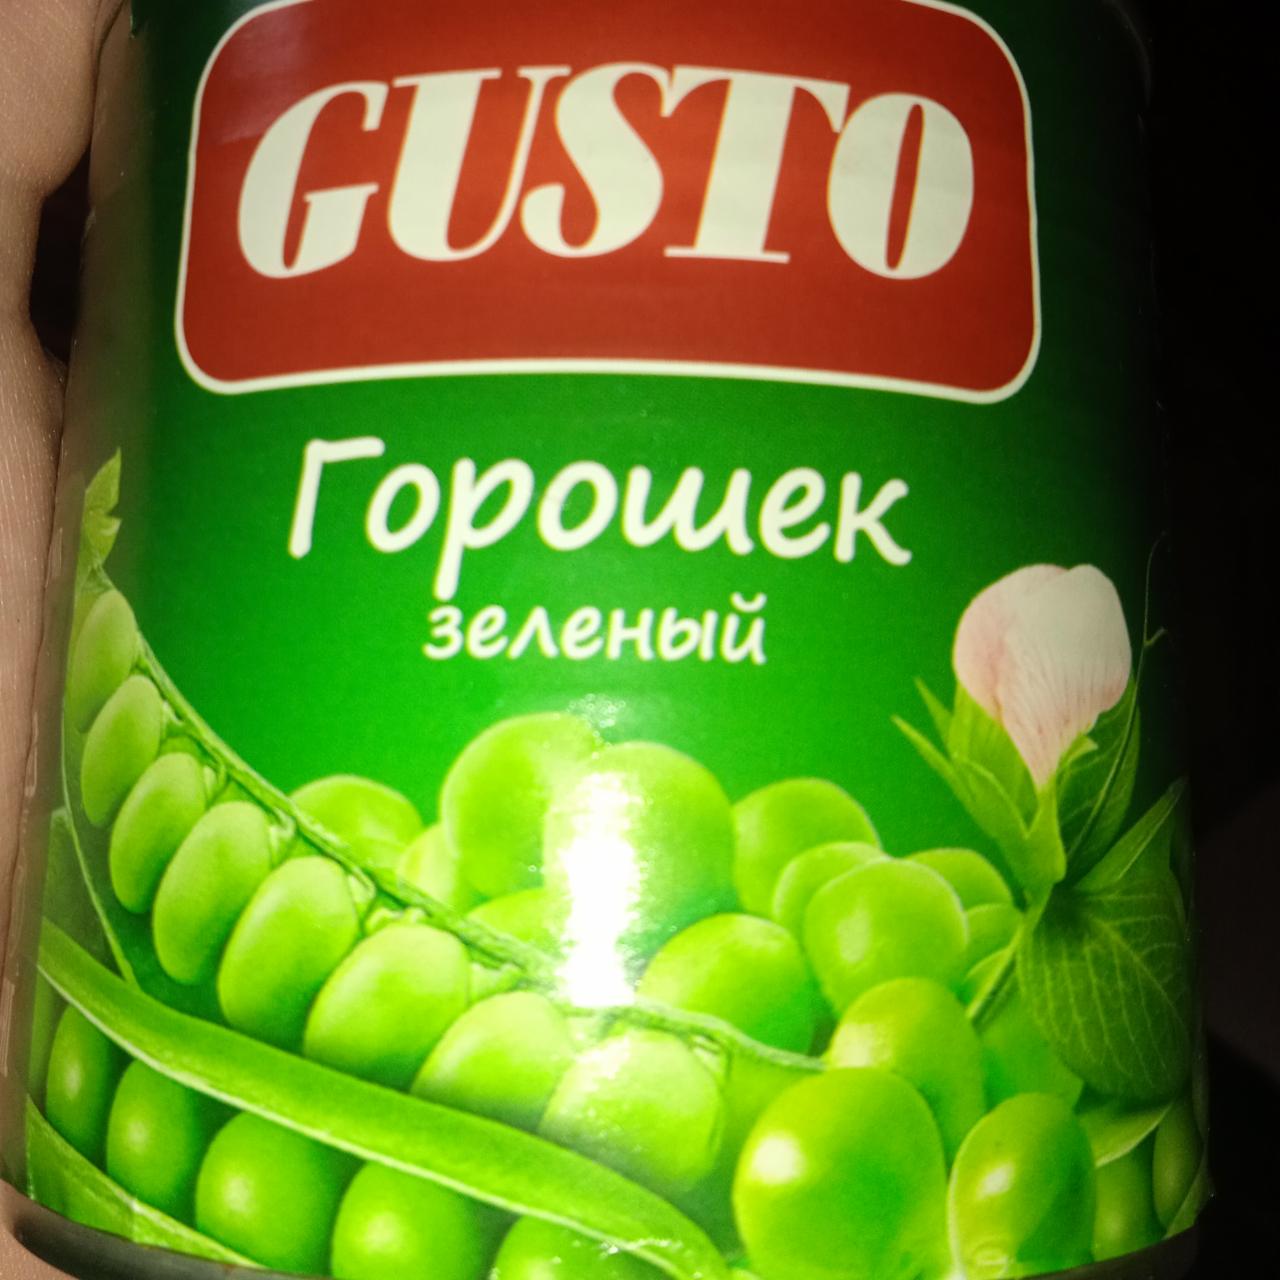 Фото - Горошек зеленый консервированный Gusto (Густо)